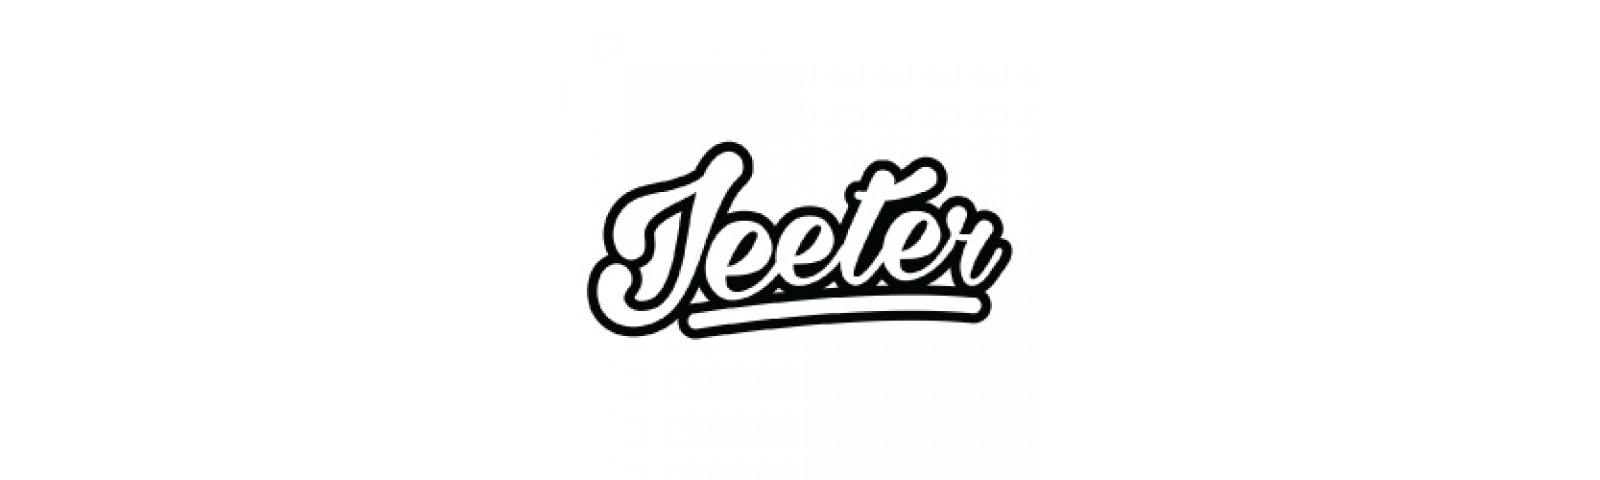 Jeeters